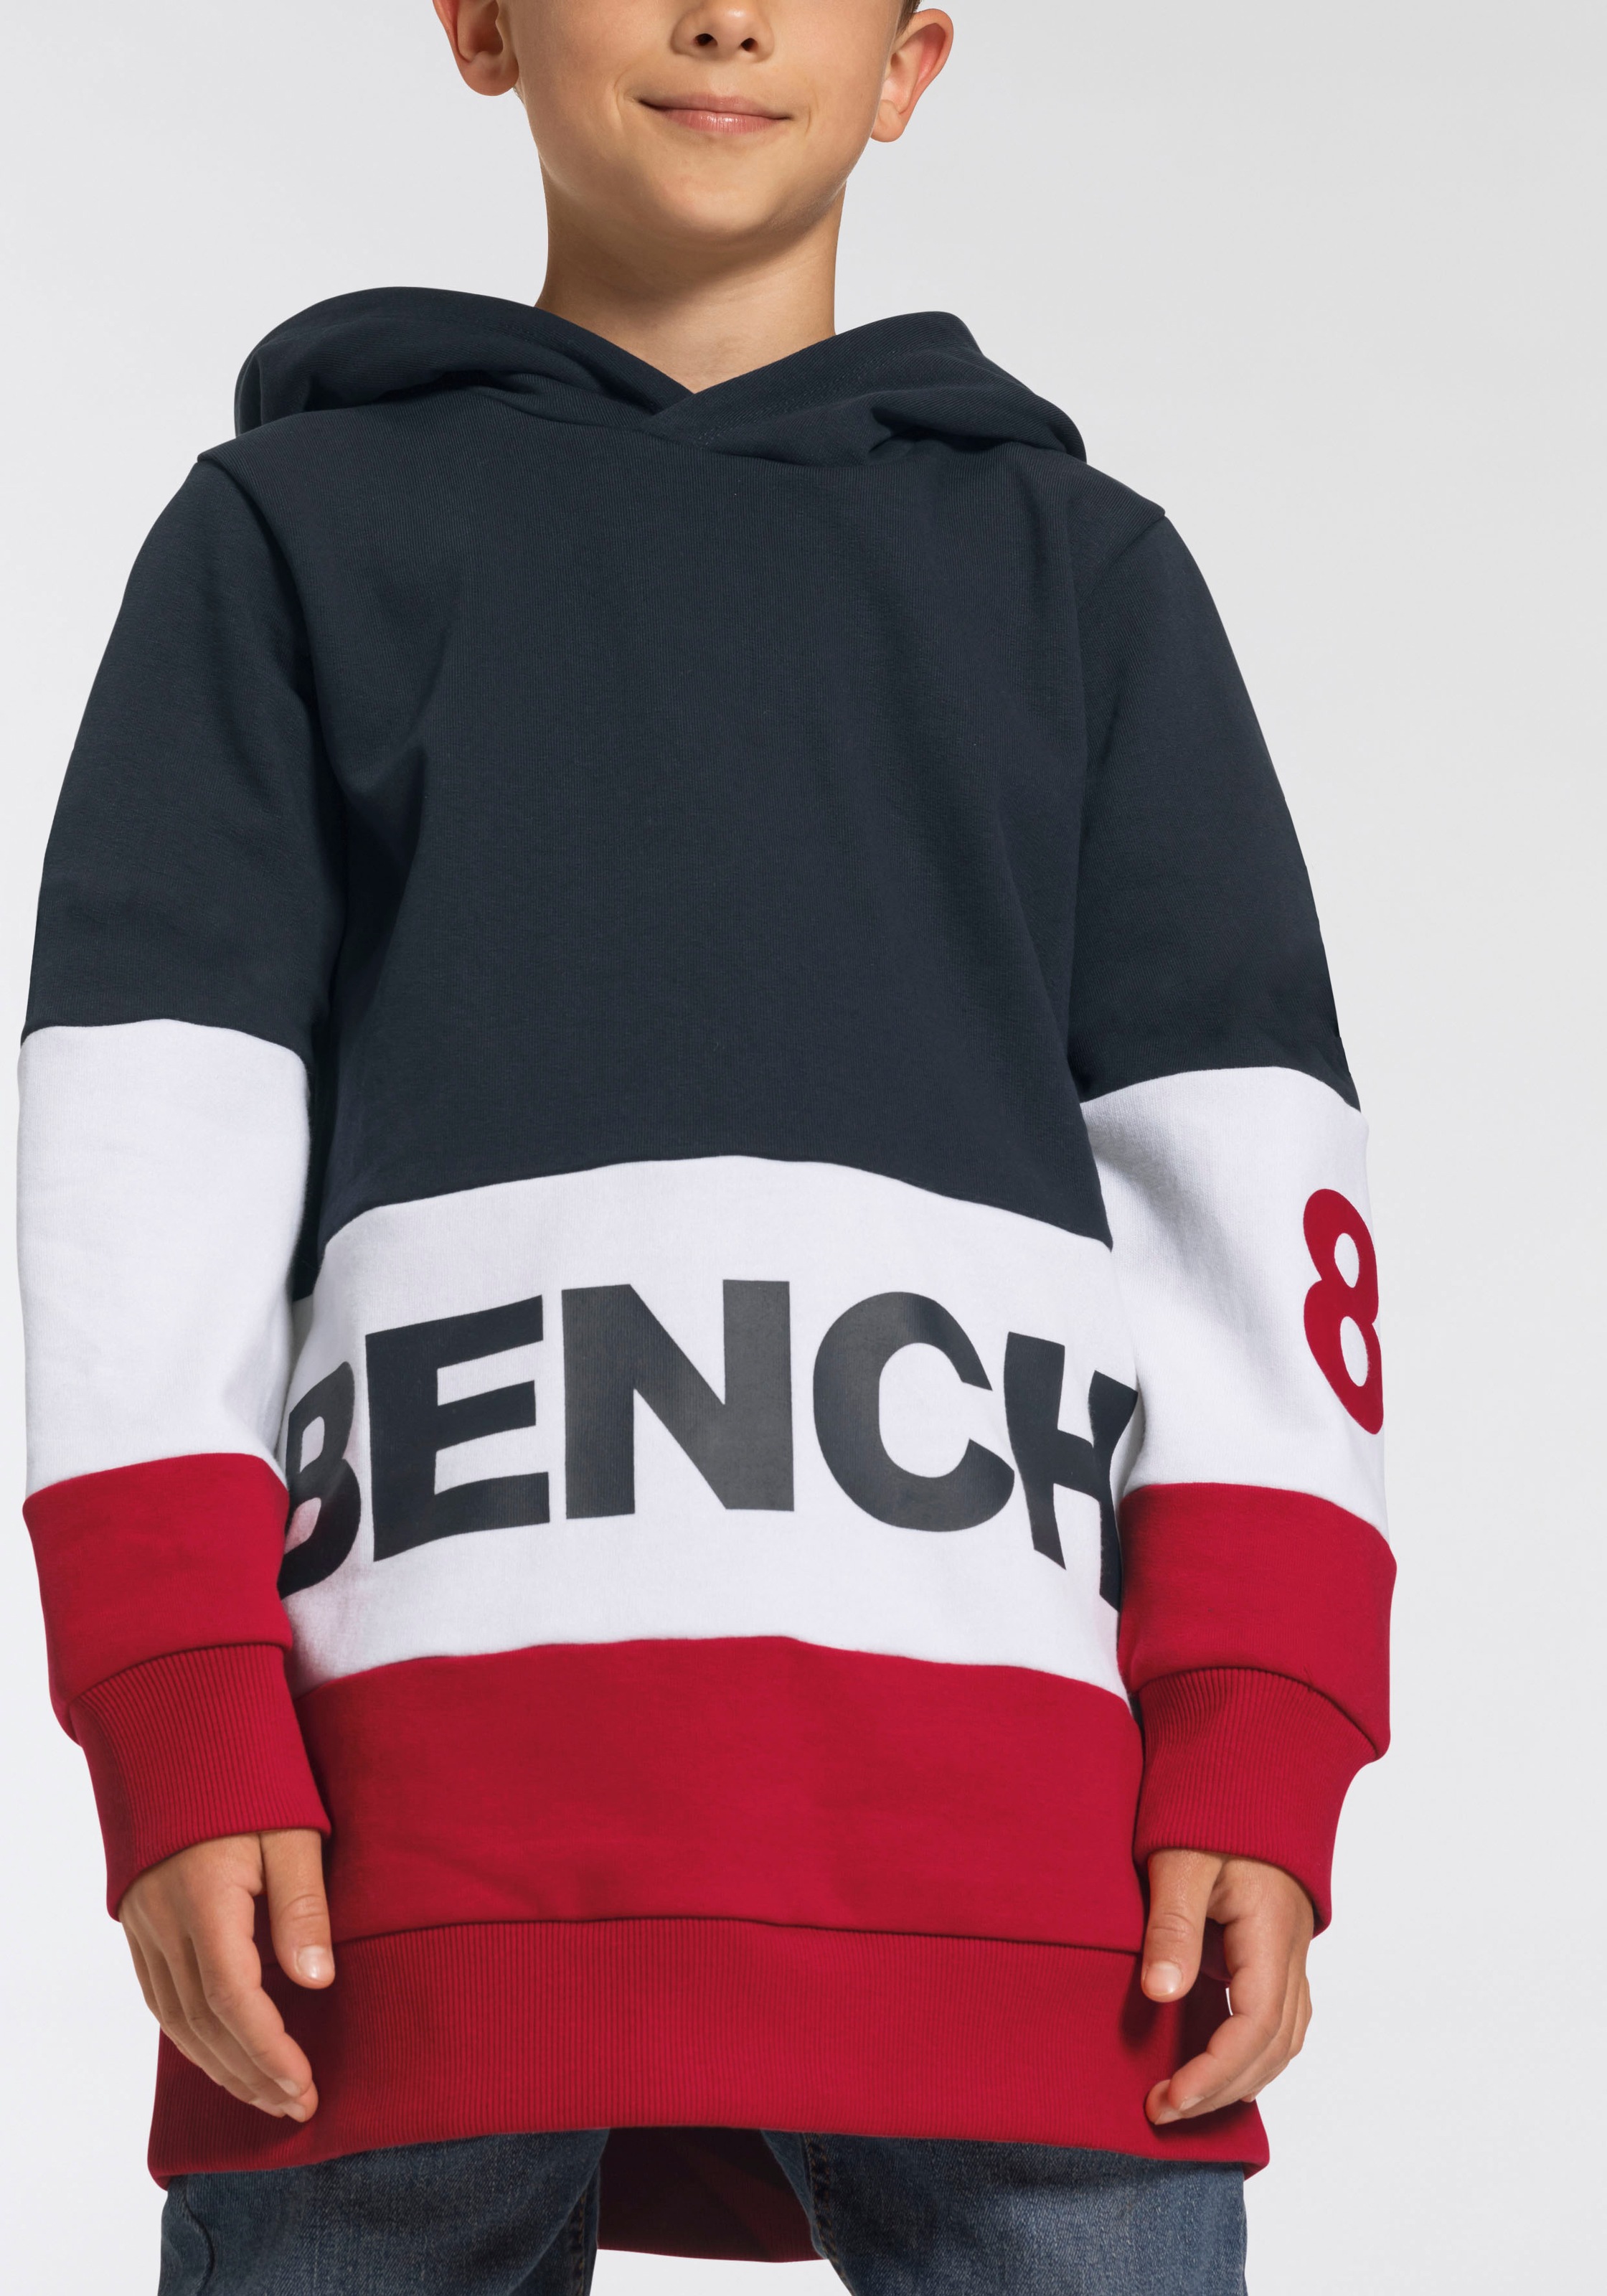 Bench. im kaufen colourblocking Design im Kapuzensweatshirt, Online-Shop